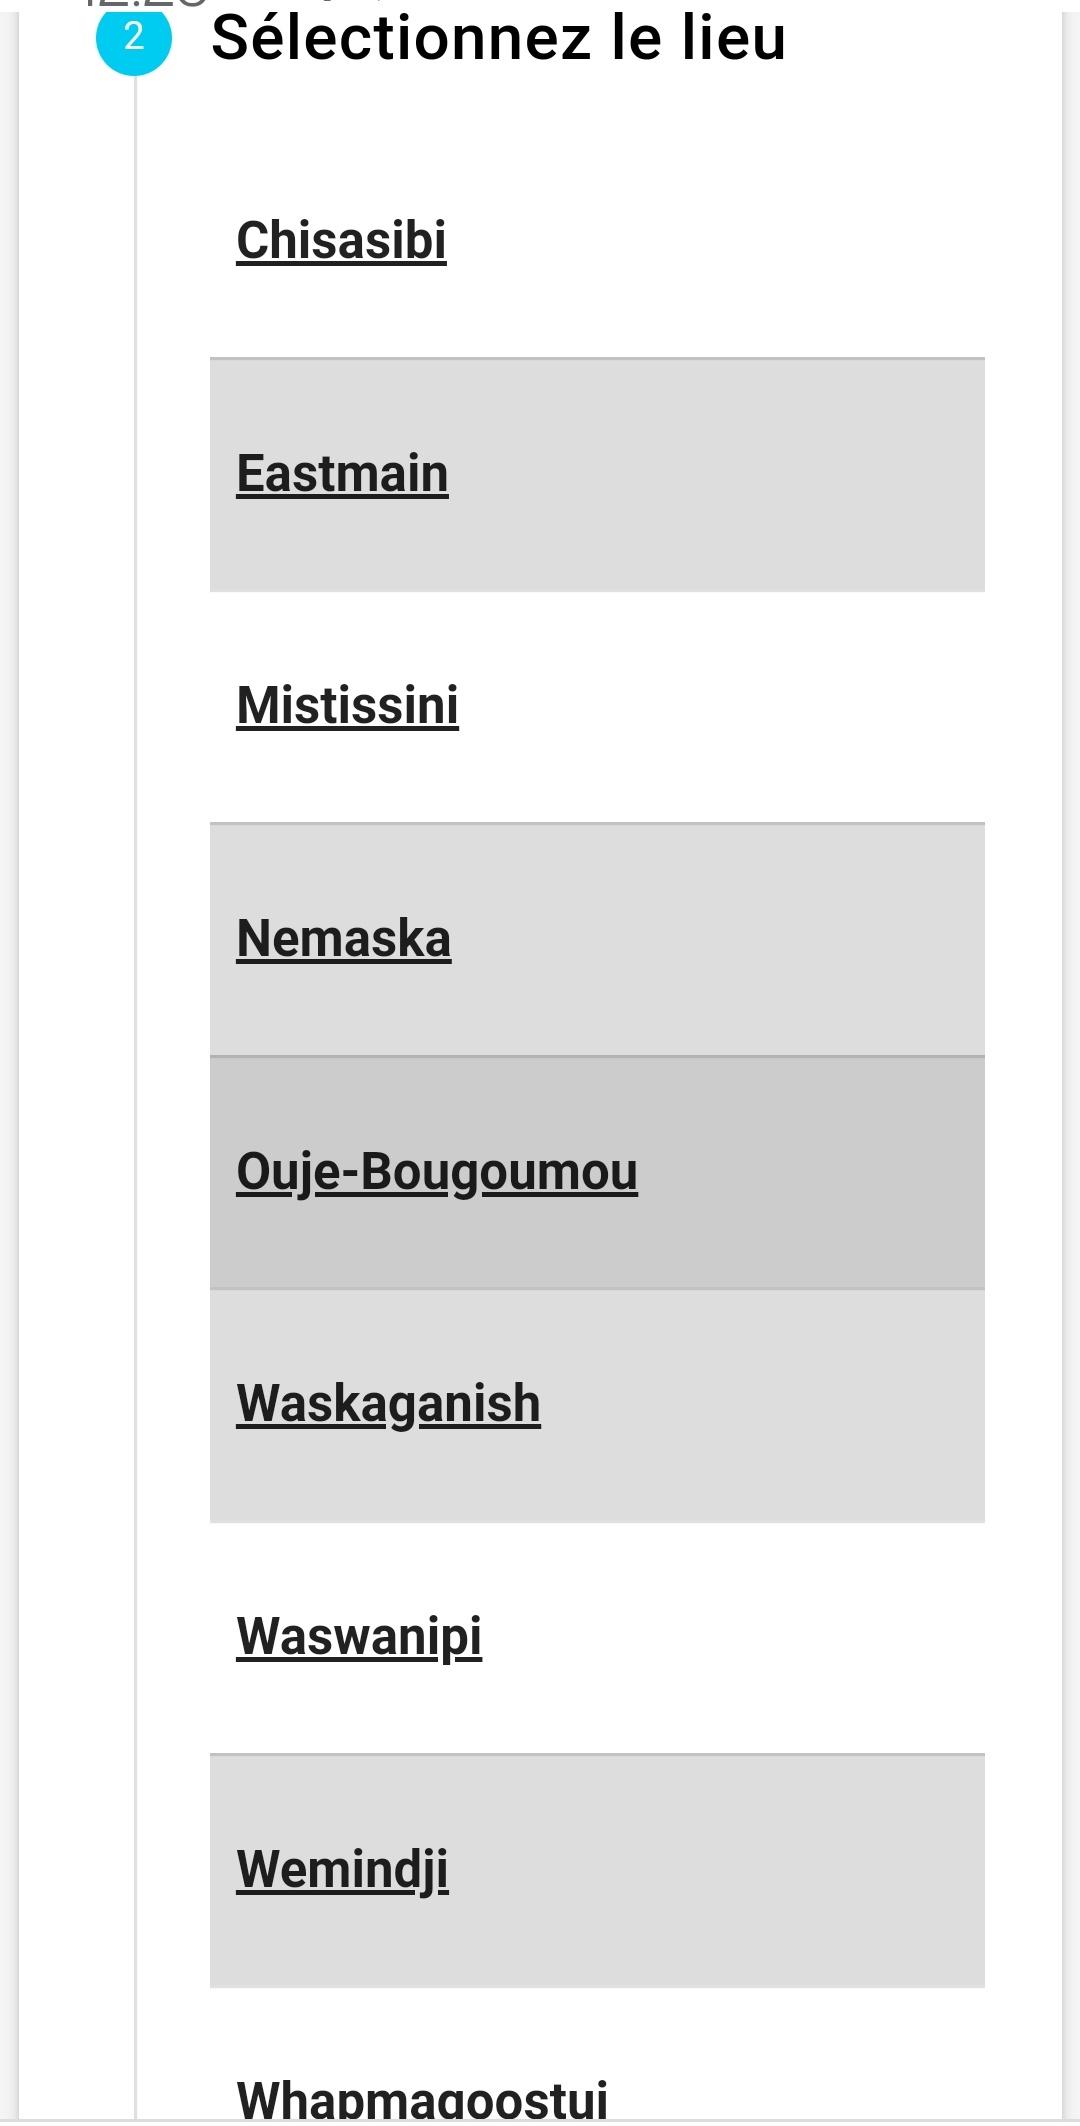 Capture d'écran de la liste des communautés d'Eeyou Istchee